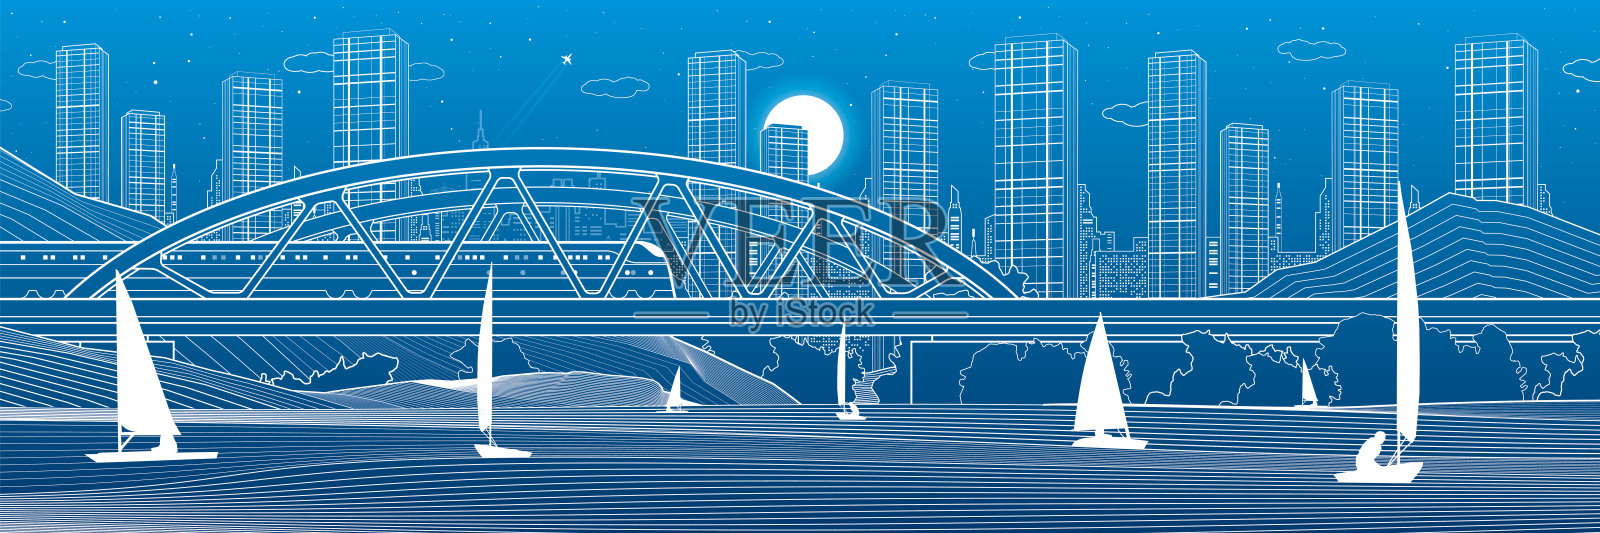 河上有一座铁路桥。火车。在水上航行的船只。概述城市插图。晚上的城市场景。小镇的城市。蓝色背景上的白线。矢量设计艺术插画图片素材